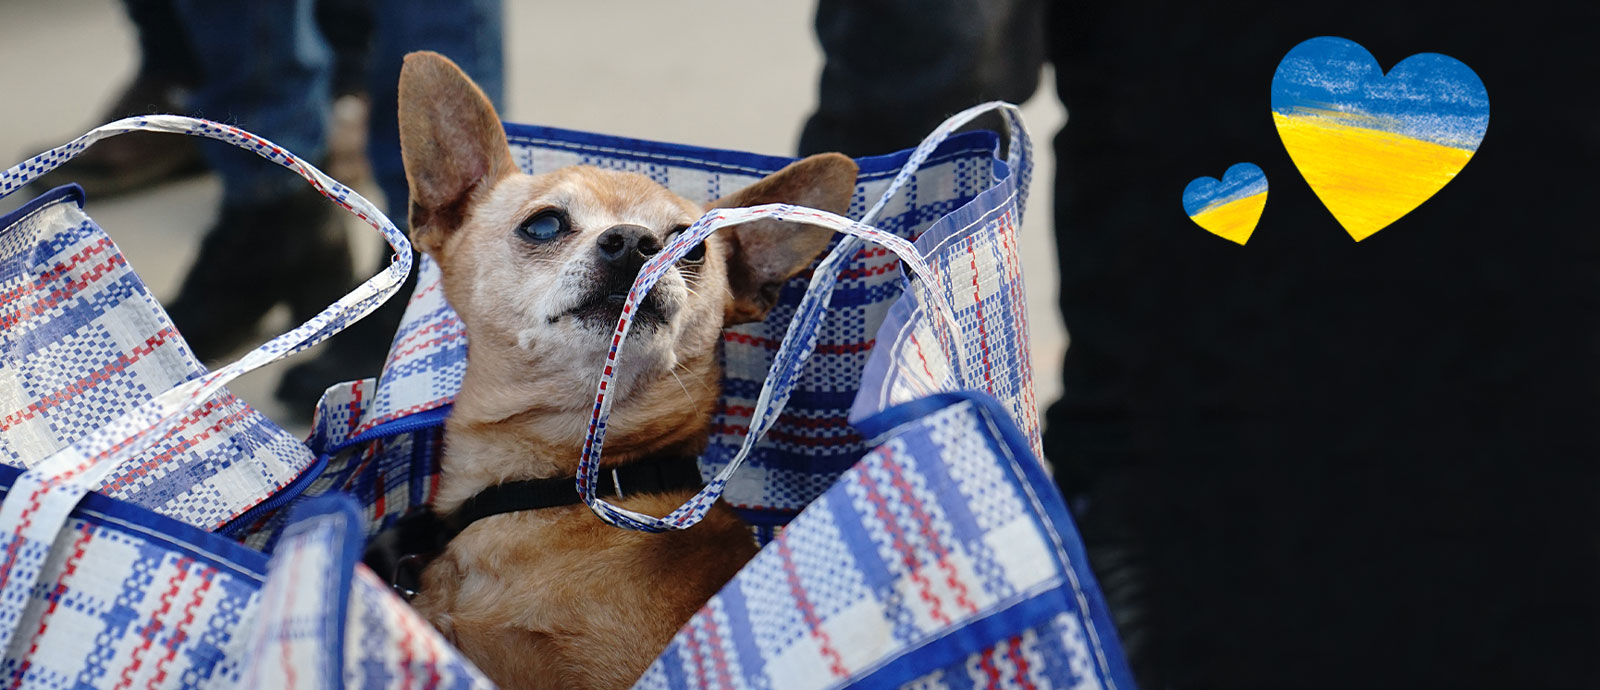 Ein kleiner Hund in einer Einkaufstasche